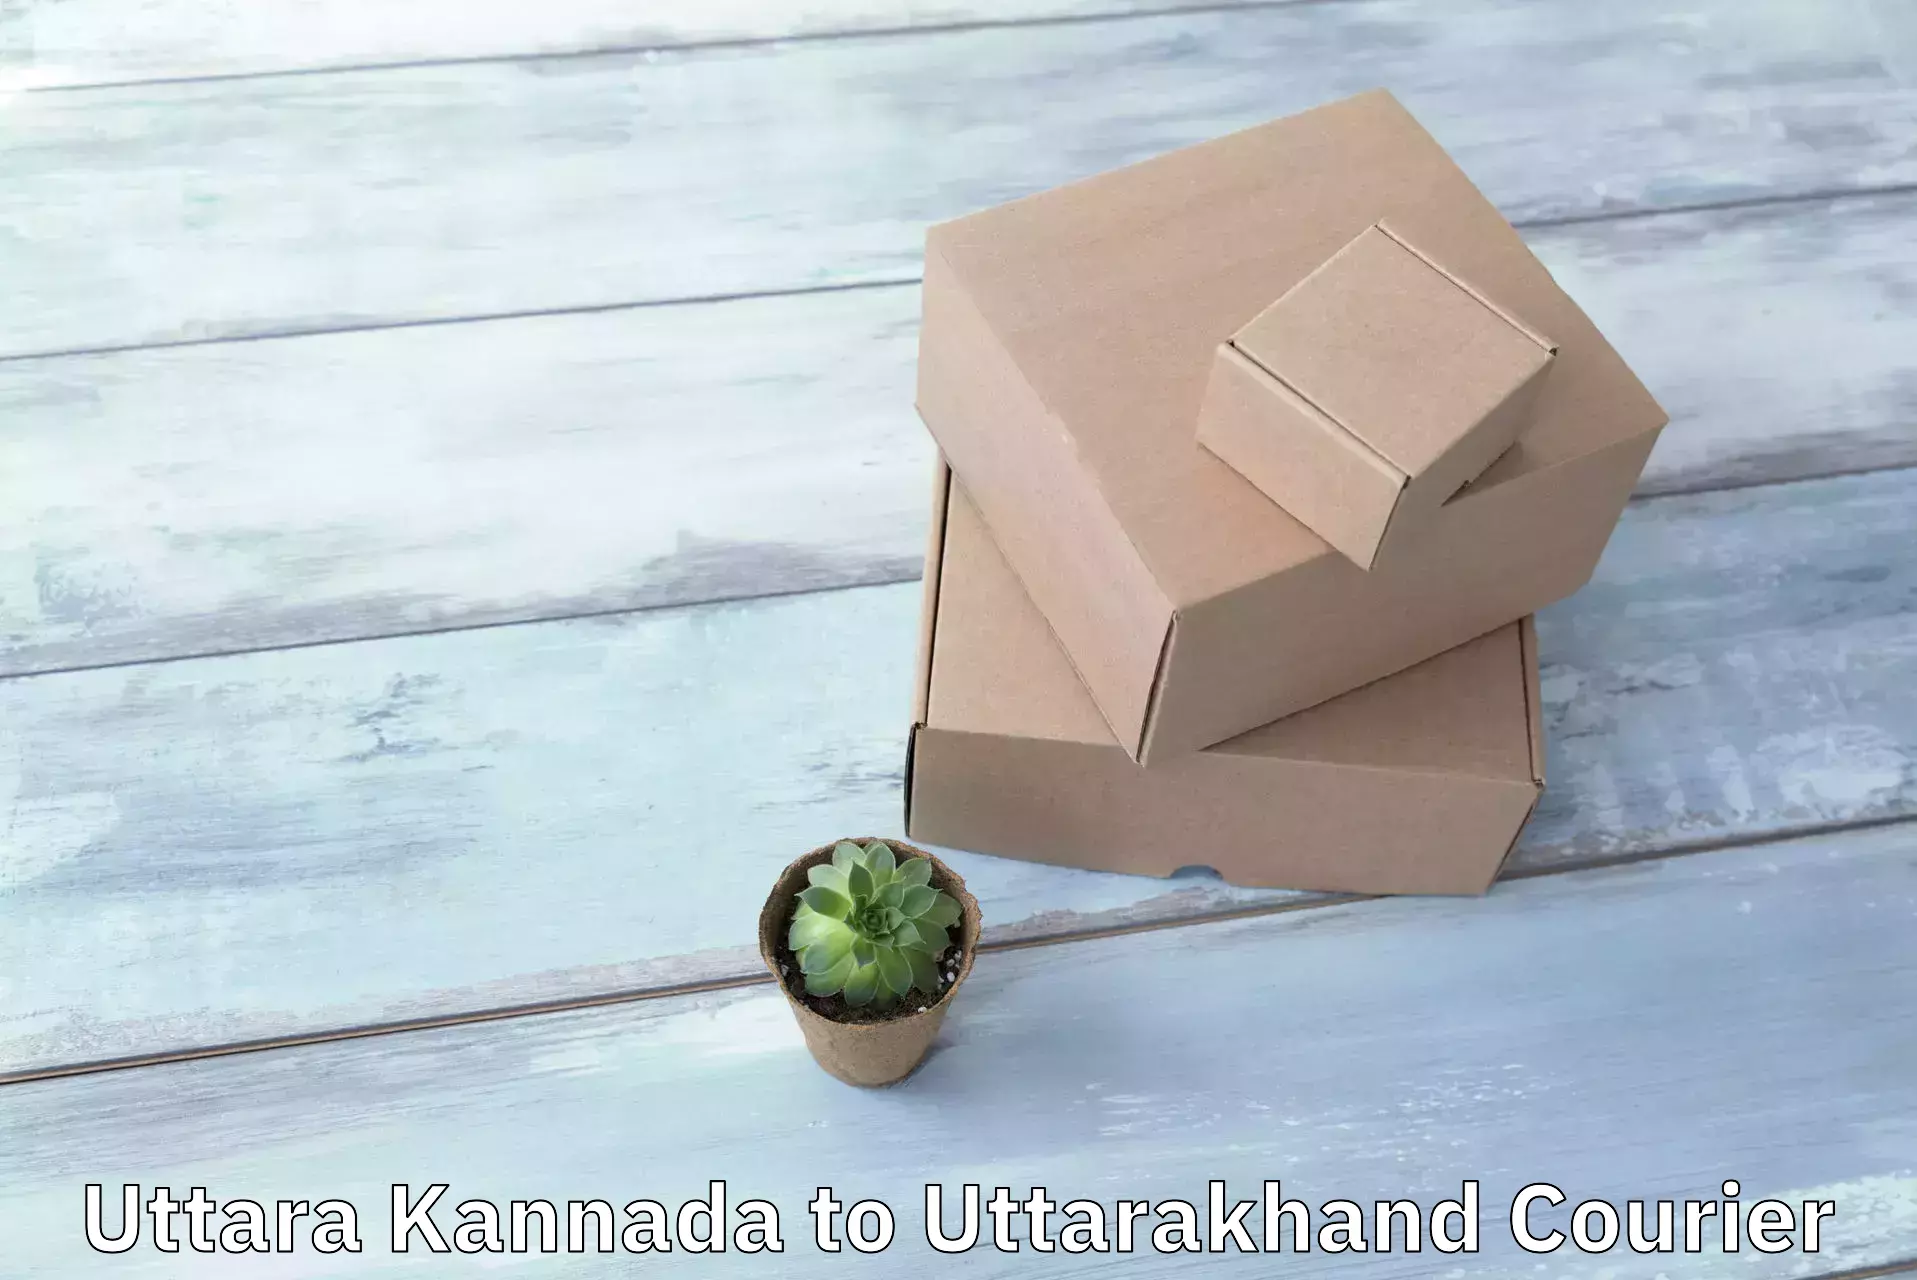 Bulk shipping discounts Uttara Kannada to Pauri Garhwal